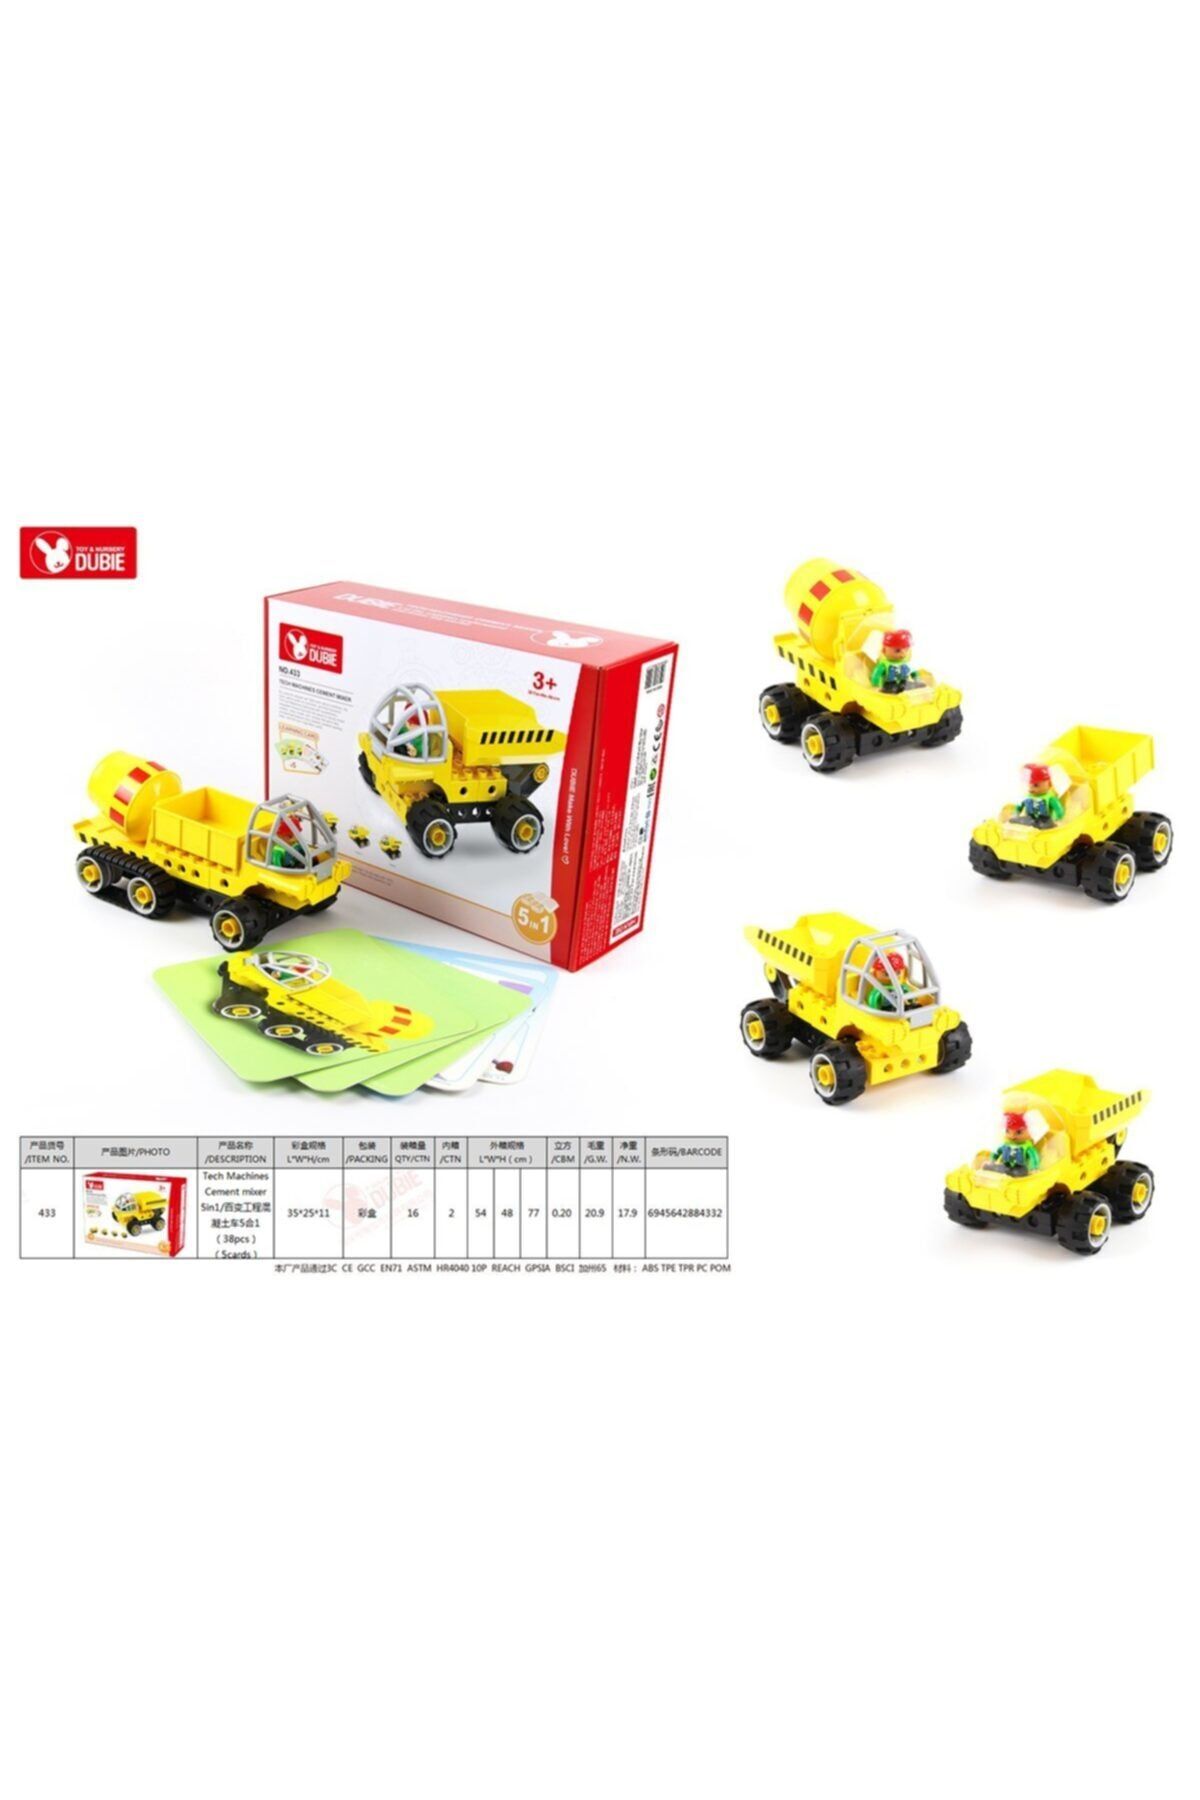 LEGO Lisinya193 433 Dubie İnşaat Araçları 5in1 / 38 parça +5 Kart /+3 yaş alithestereo